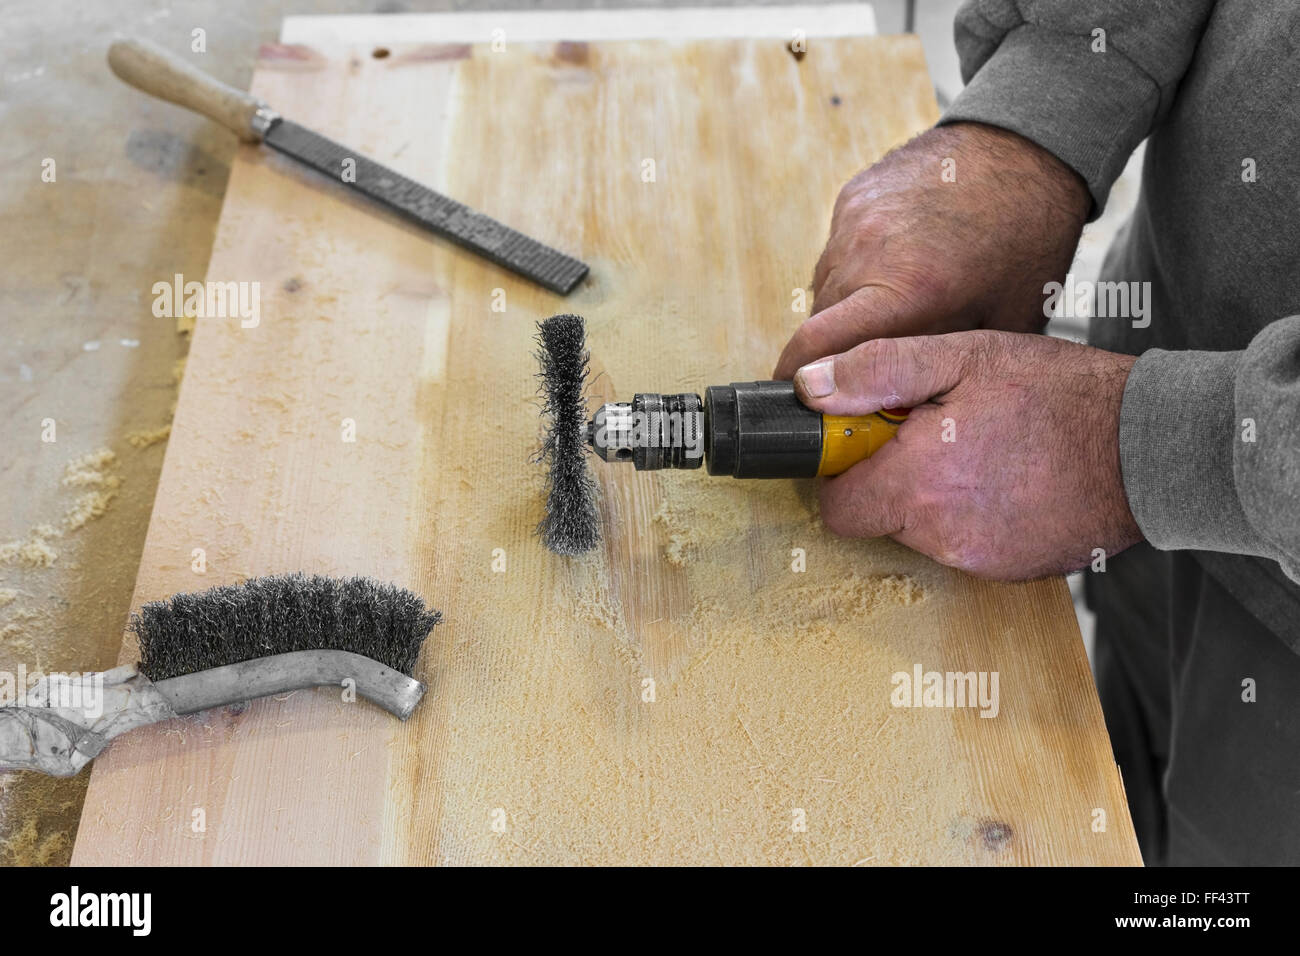 Hände Mann mit elektrischen rotierenden Bürste Metallscheibe ein Stück Holz Schleifen Stockfoto